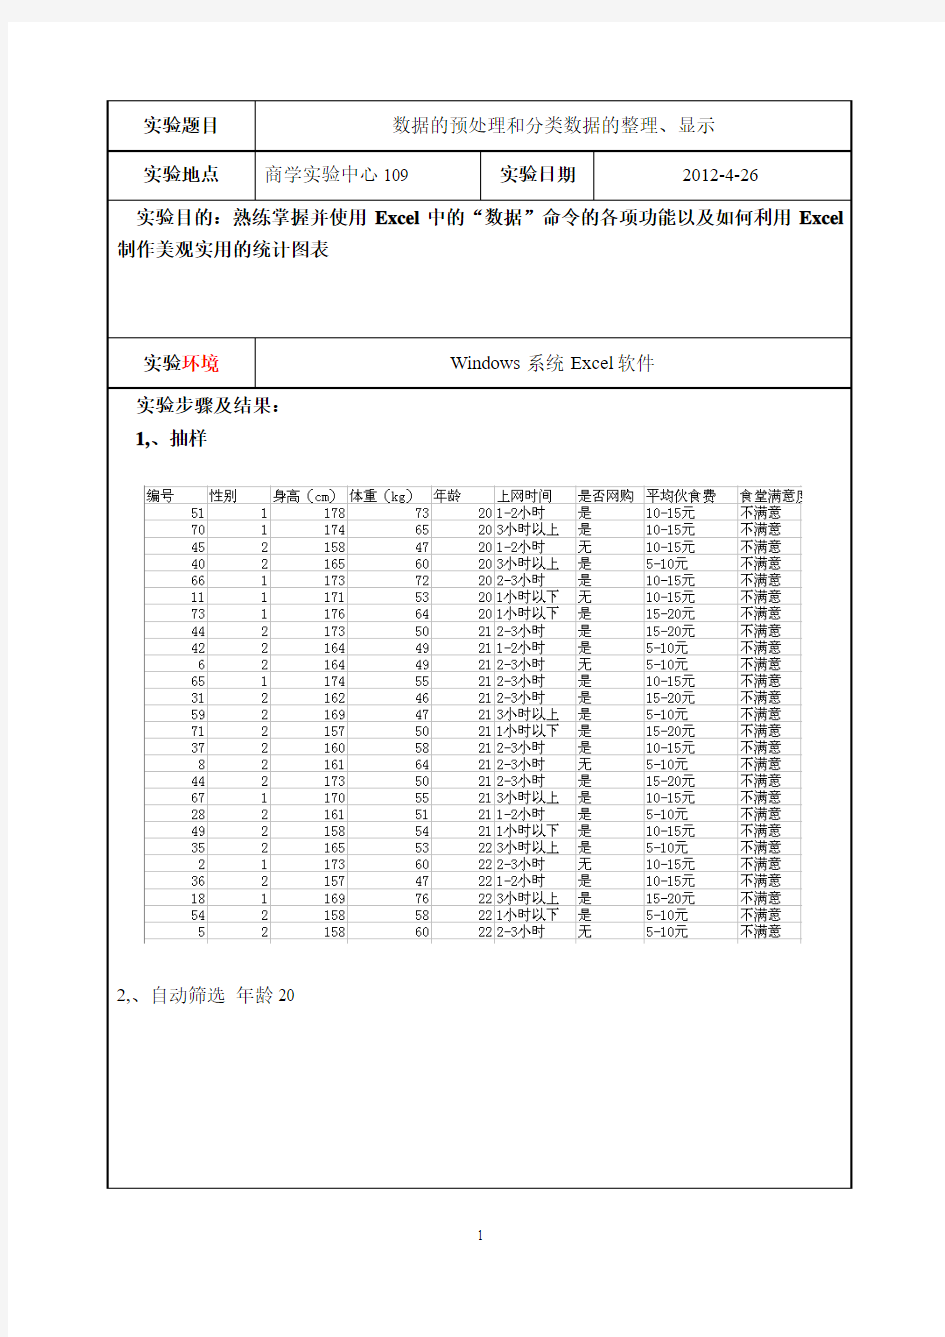 统计学实验报告旅游102徐佳宝10075231